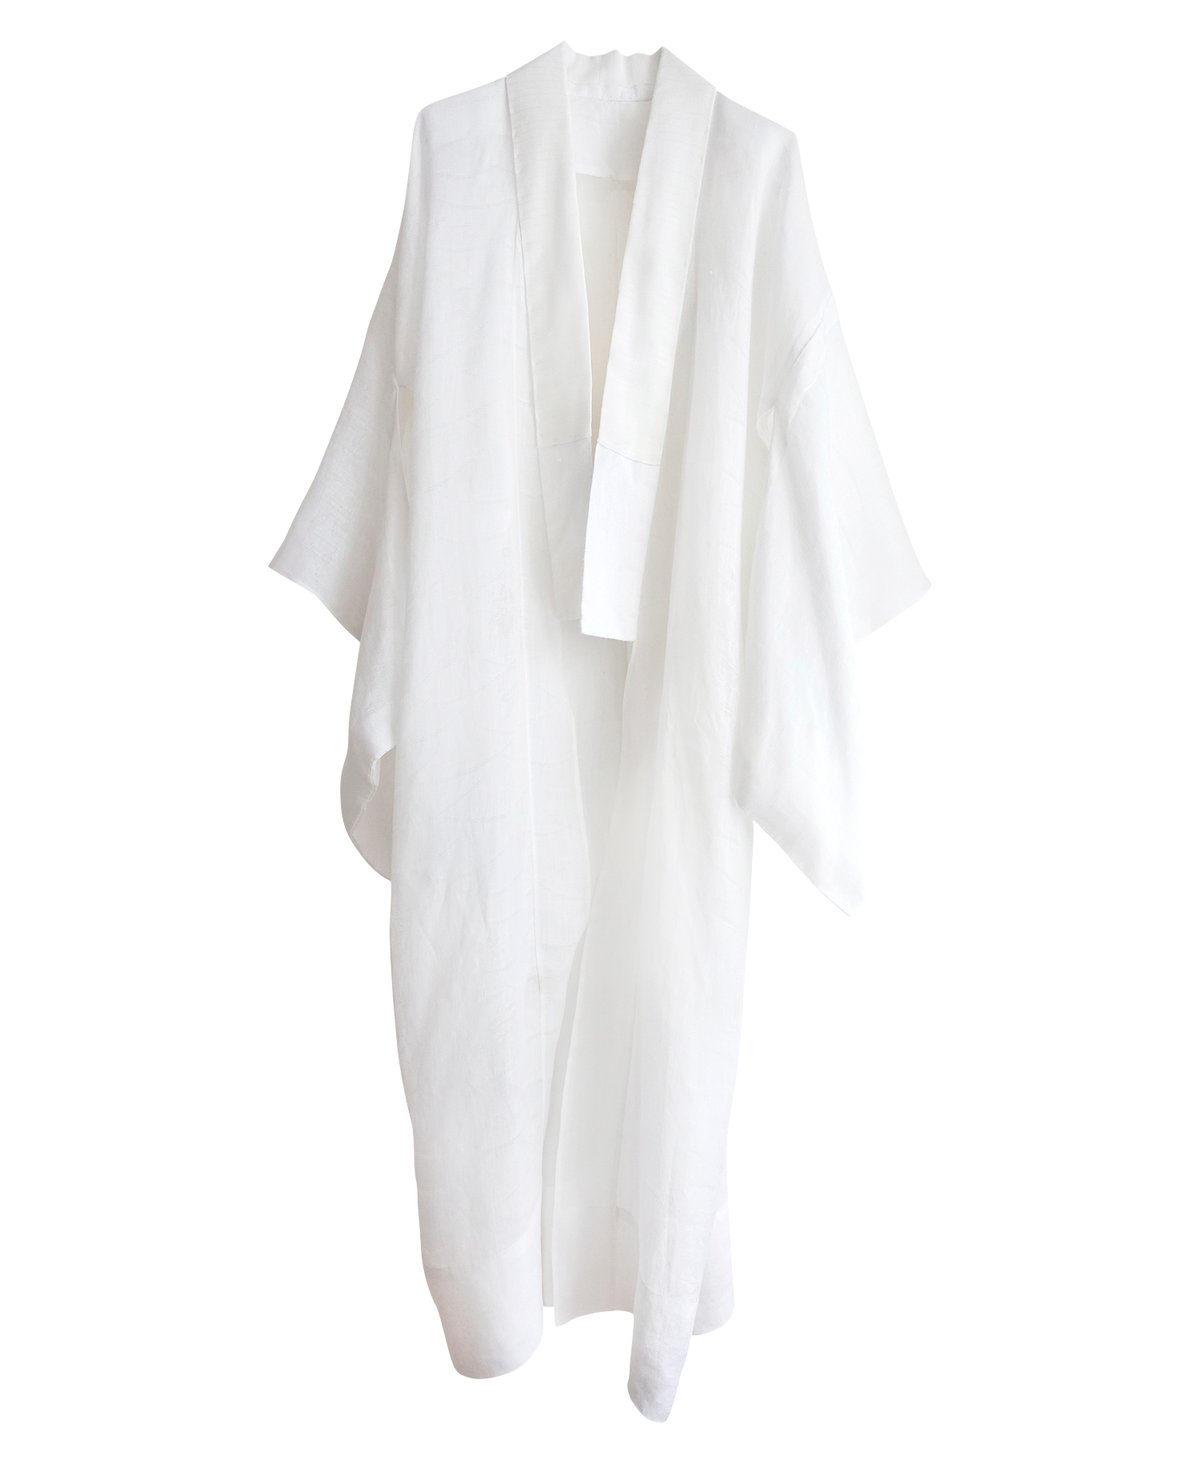 Image of Hvid kimono af silke-hør med fint hulmønster